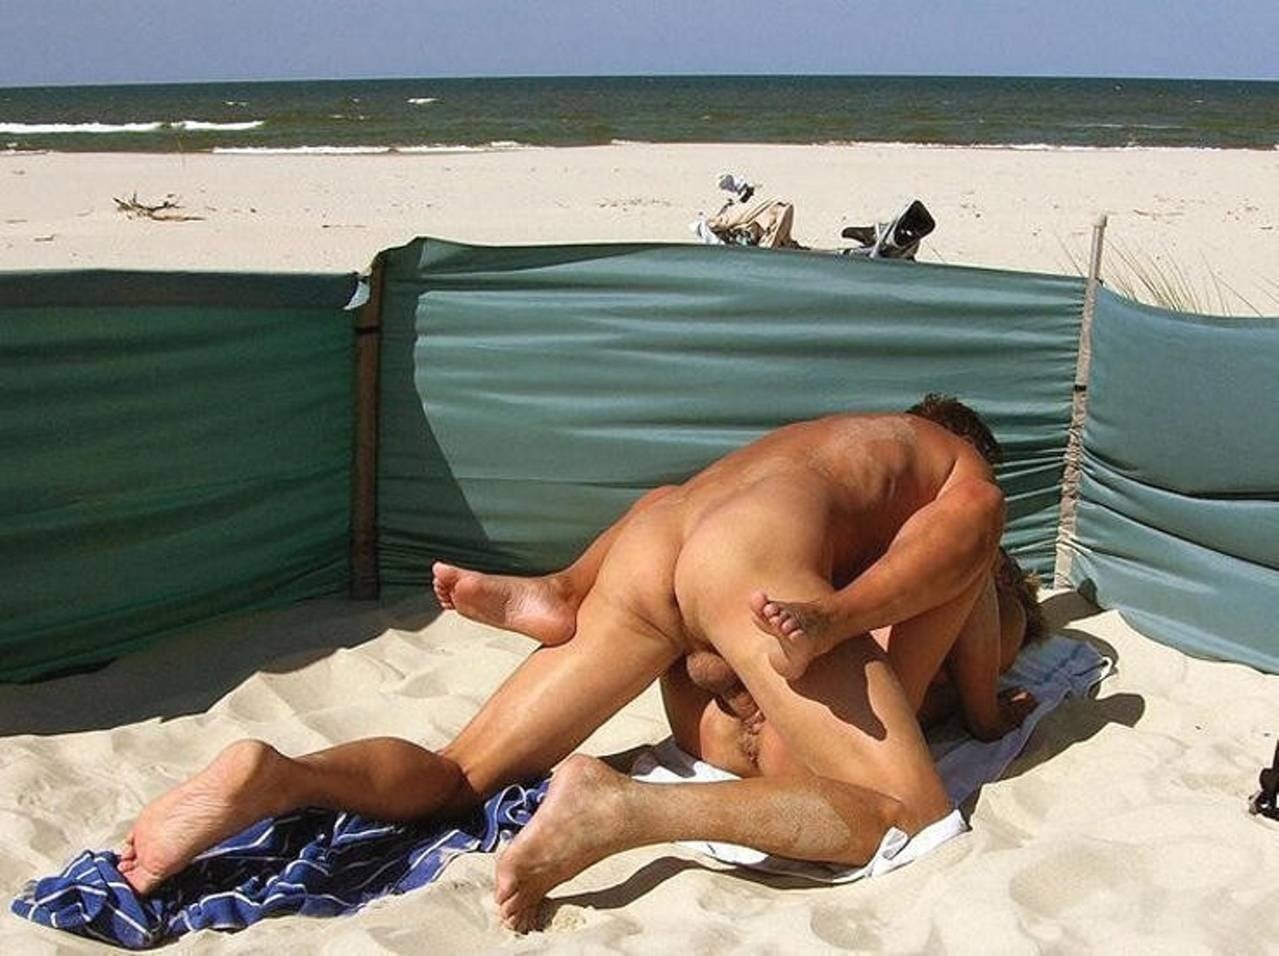 Скачать порно юные девушки на нудиском пляже. Секс ролики юные девушки на нудиском пляже бесплатно.